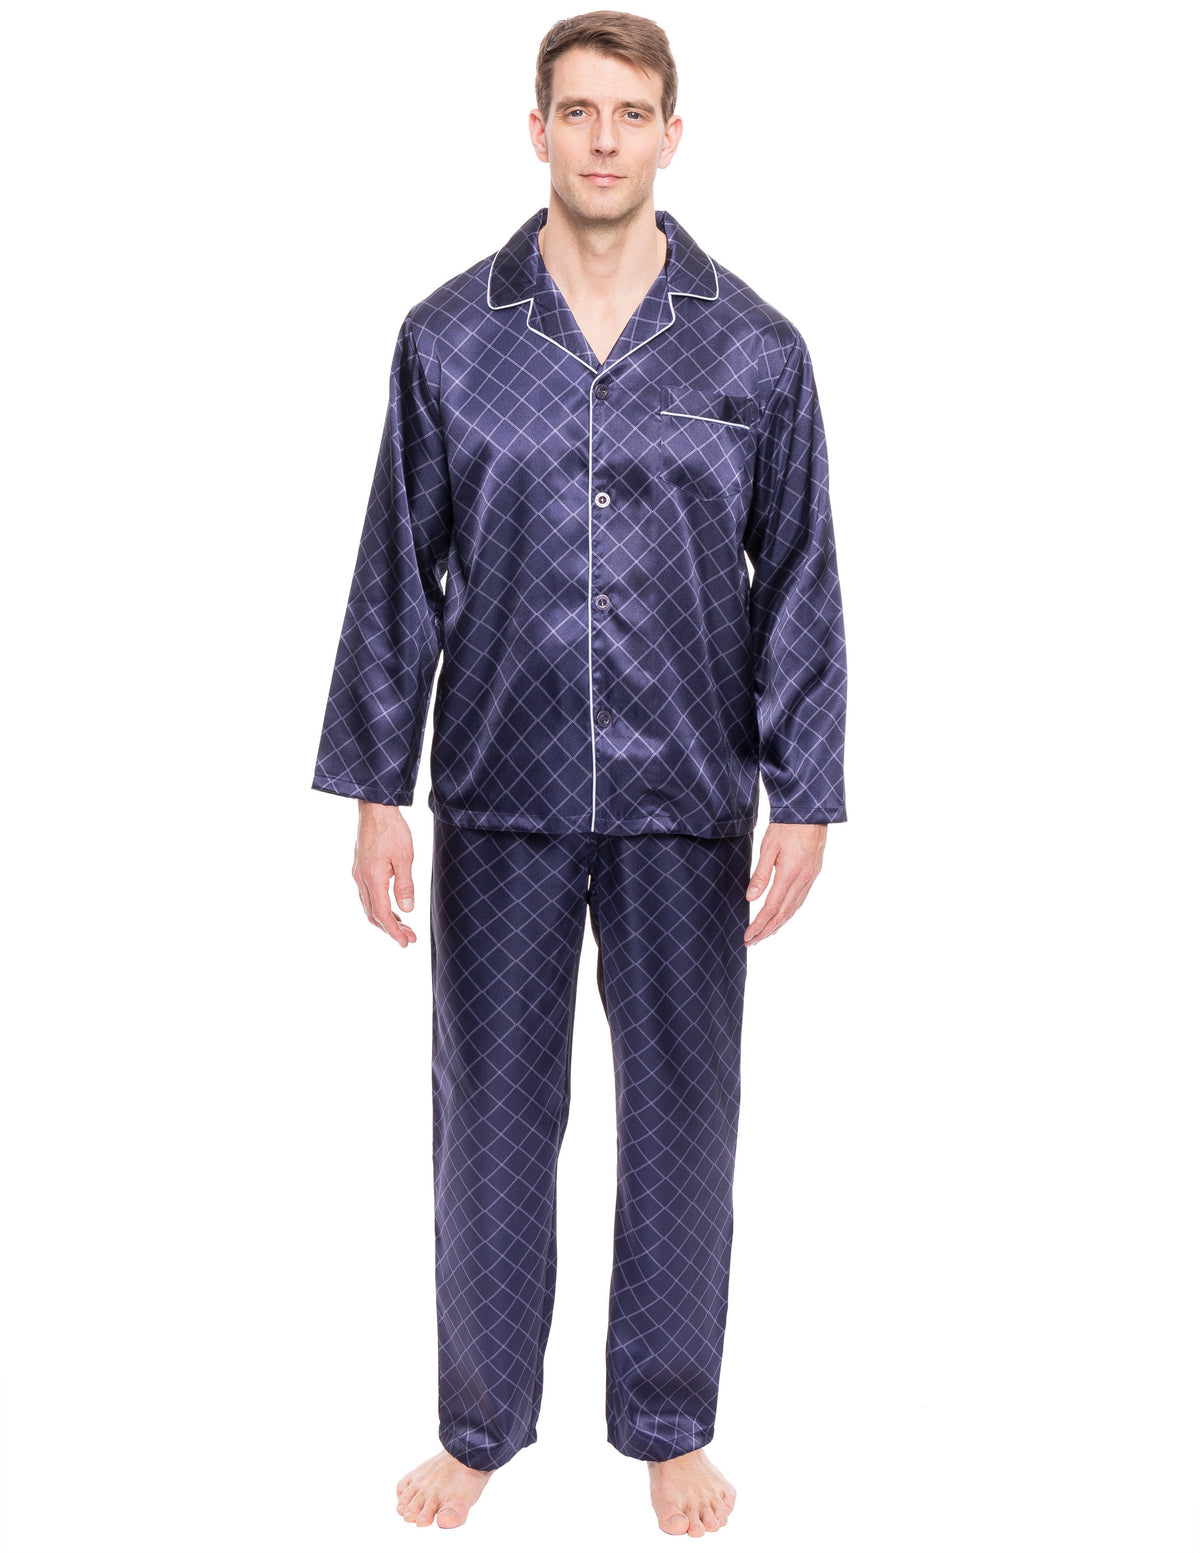 Mens Satin Sleepwear/Pajama Set - Diamond Windowpane Navy